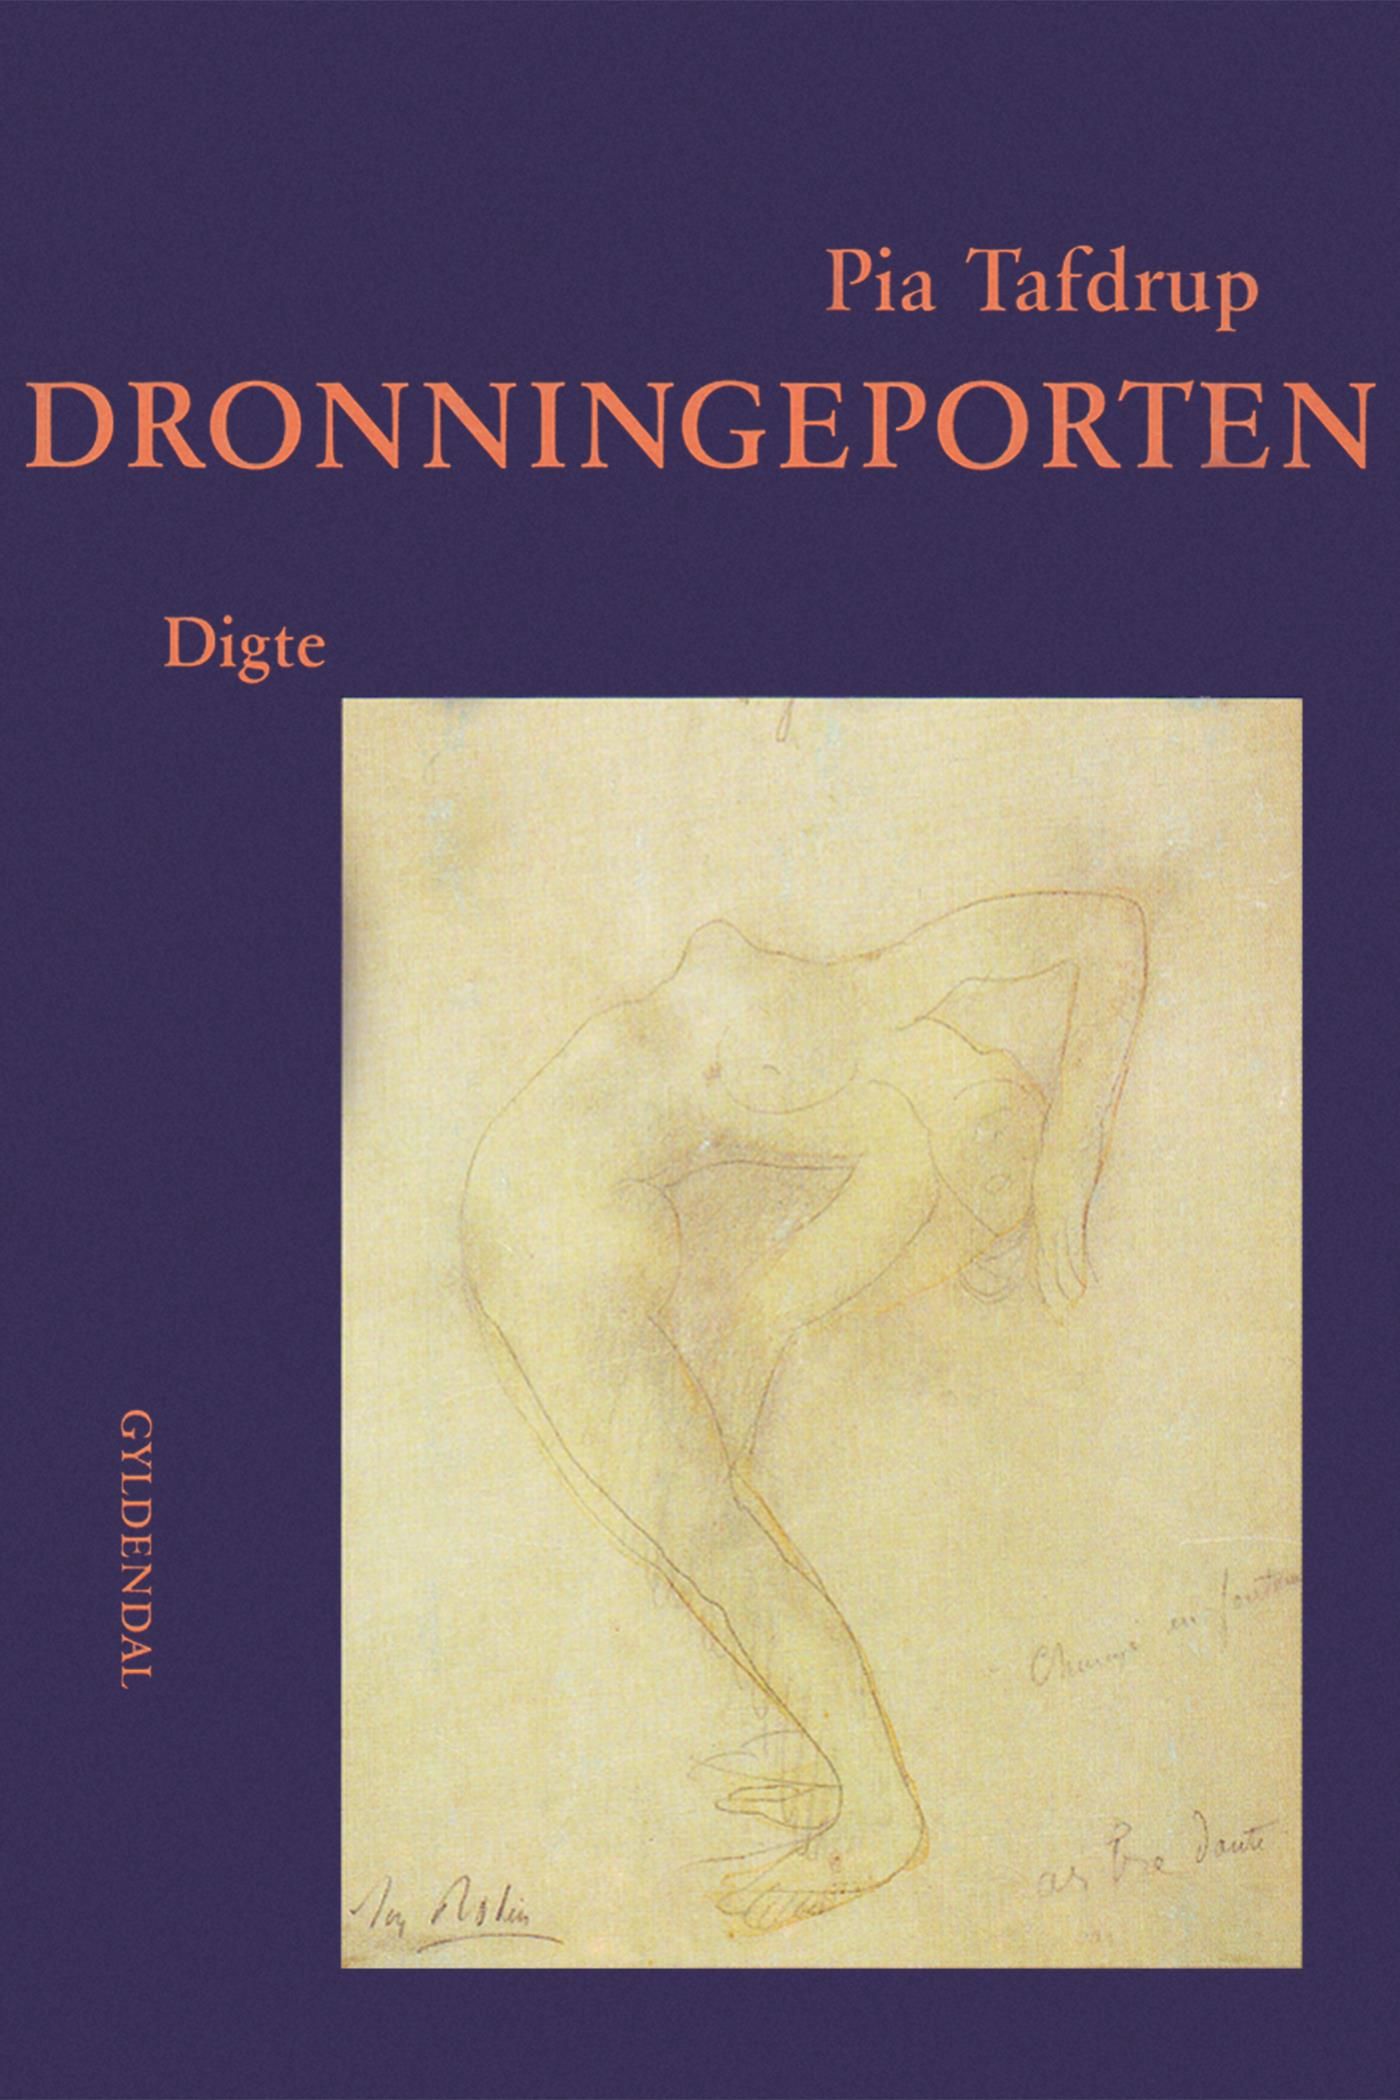 Dronningeporten, eBook by Pia Tafdrup